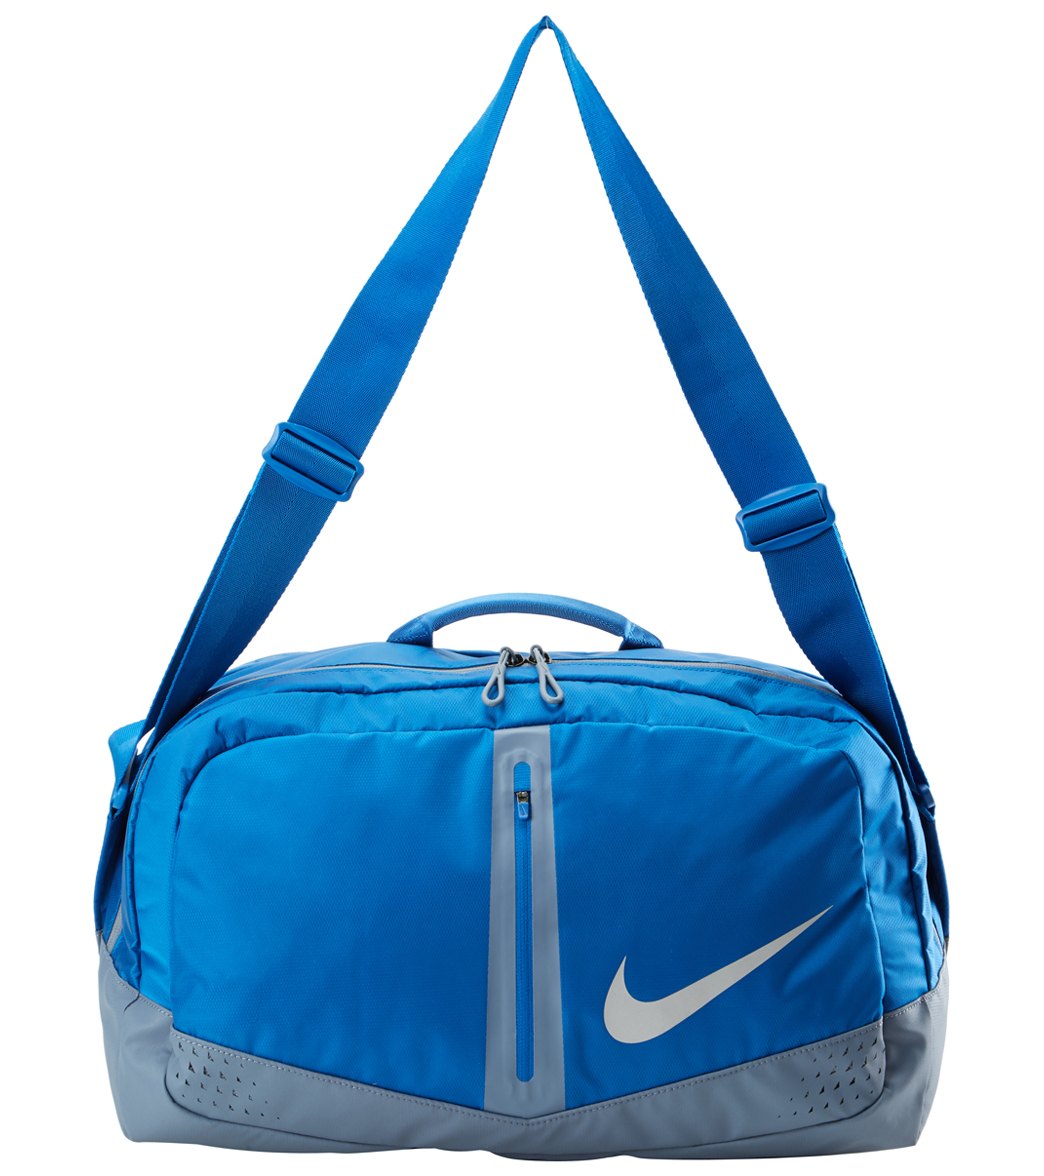 Nike Run Duffle Bag at SwimOutlet.com - Free Shipping